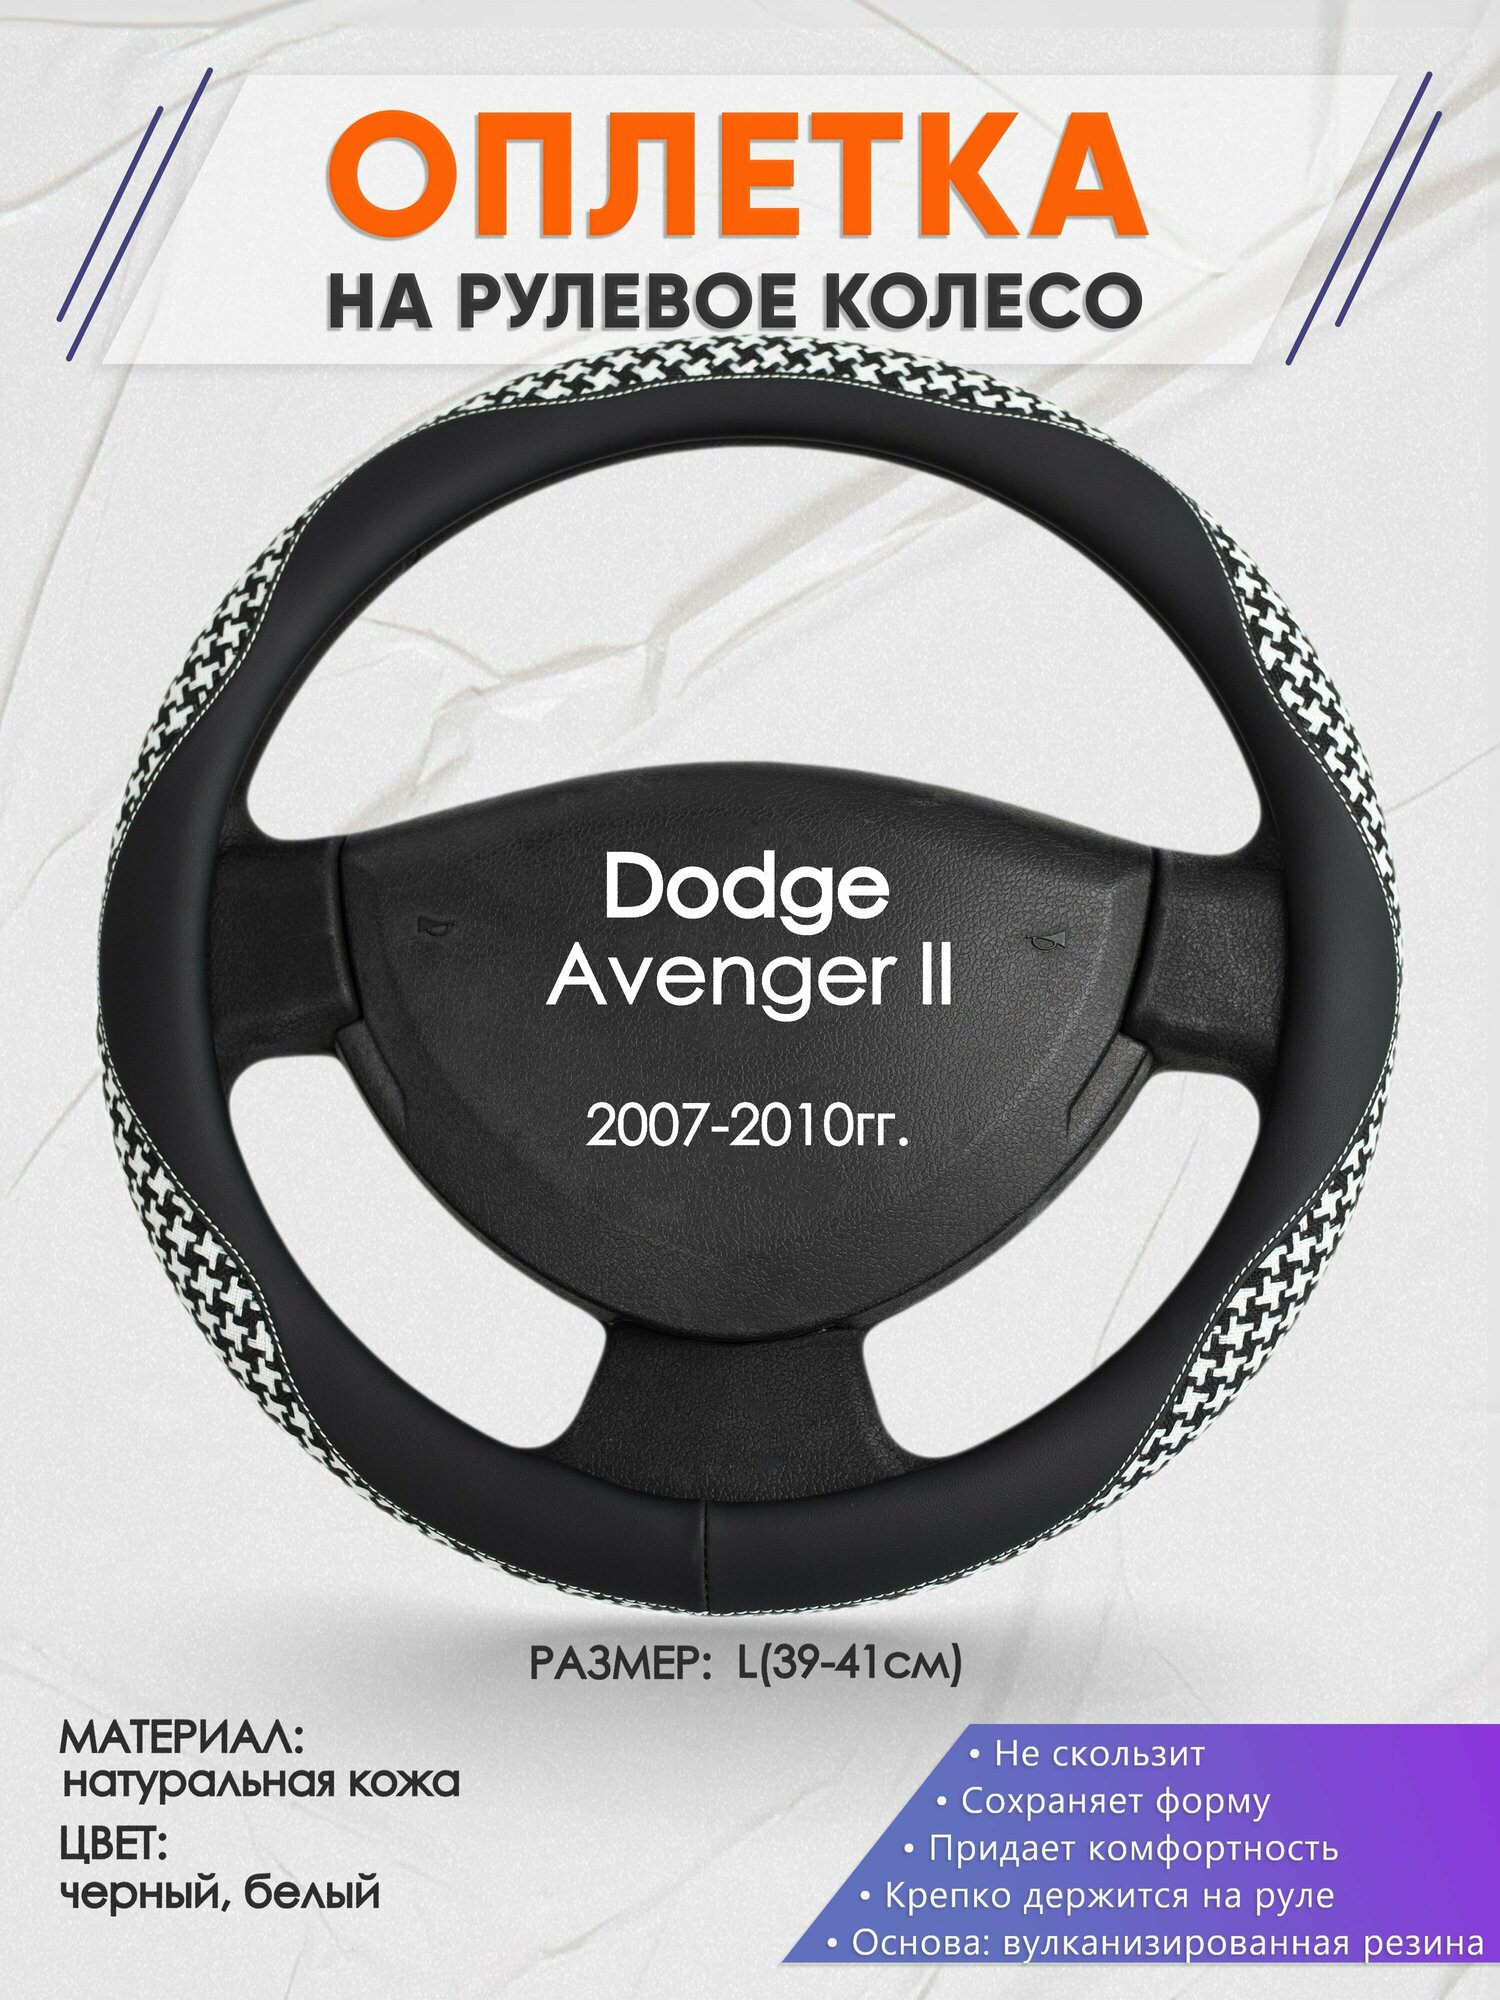 Оплетка на руль для Dodge Avenger 2(Додж Авенджер) 2007-2010, L(39-41см), Натуральная кожа 21